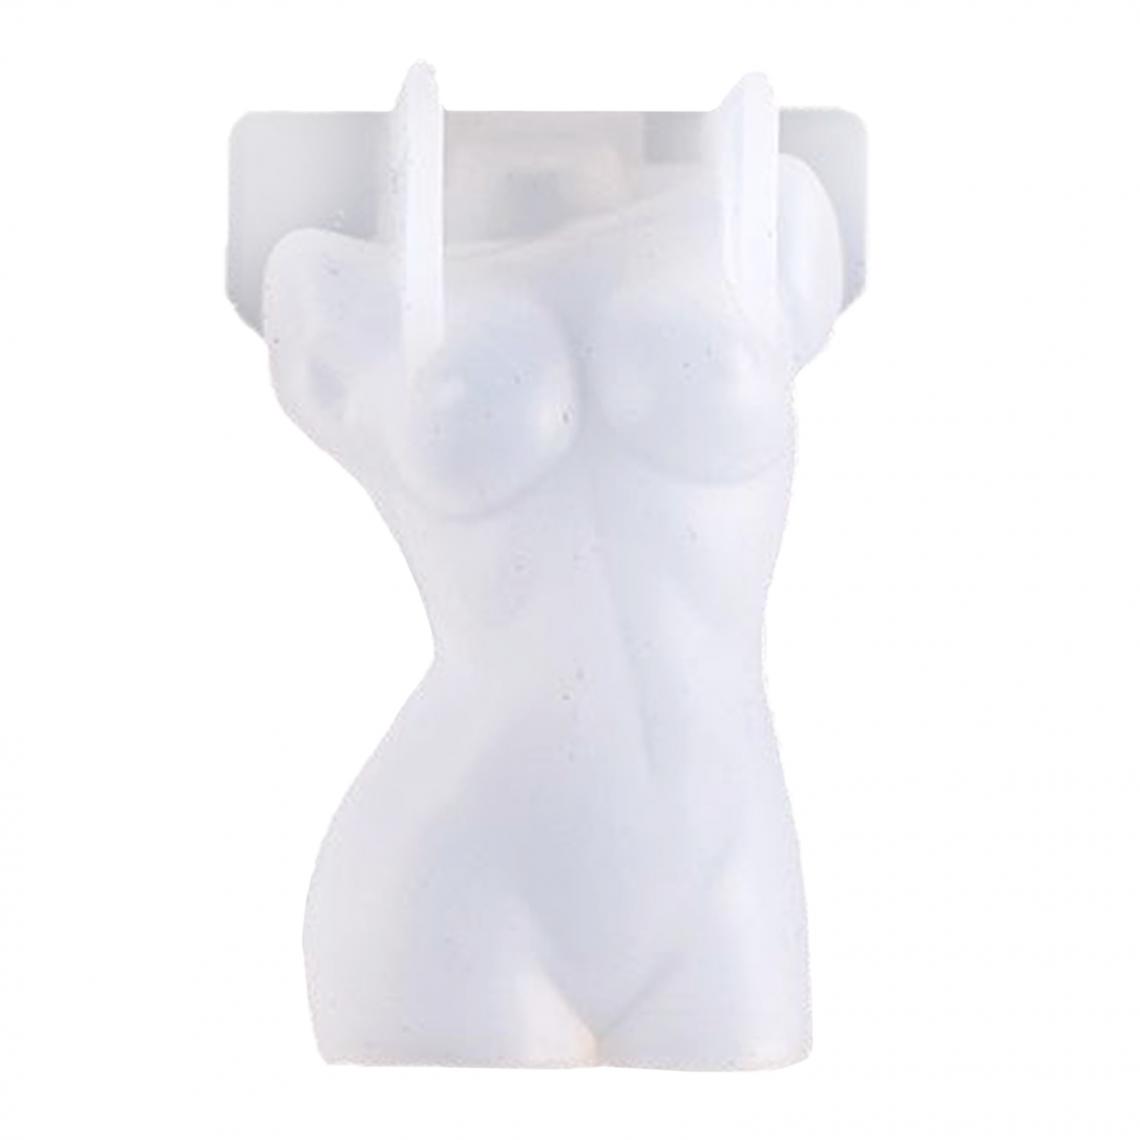 marque generique - 3D Bougie Moules Femmes Hommes Torse Savon Moule Figurine Artisanat Moules Modèle 4 - Bougies